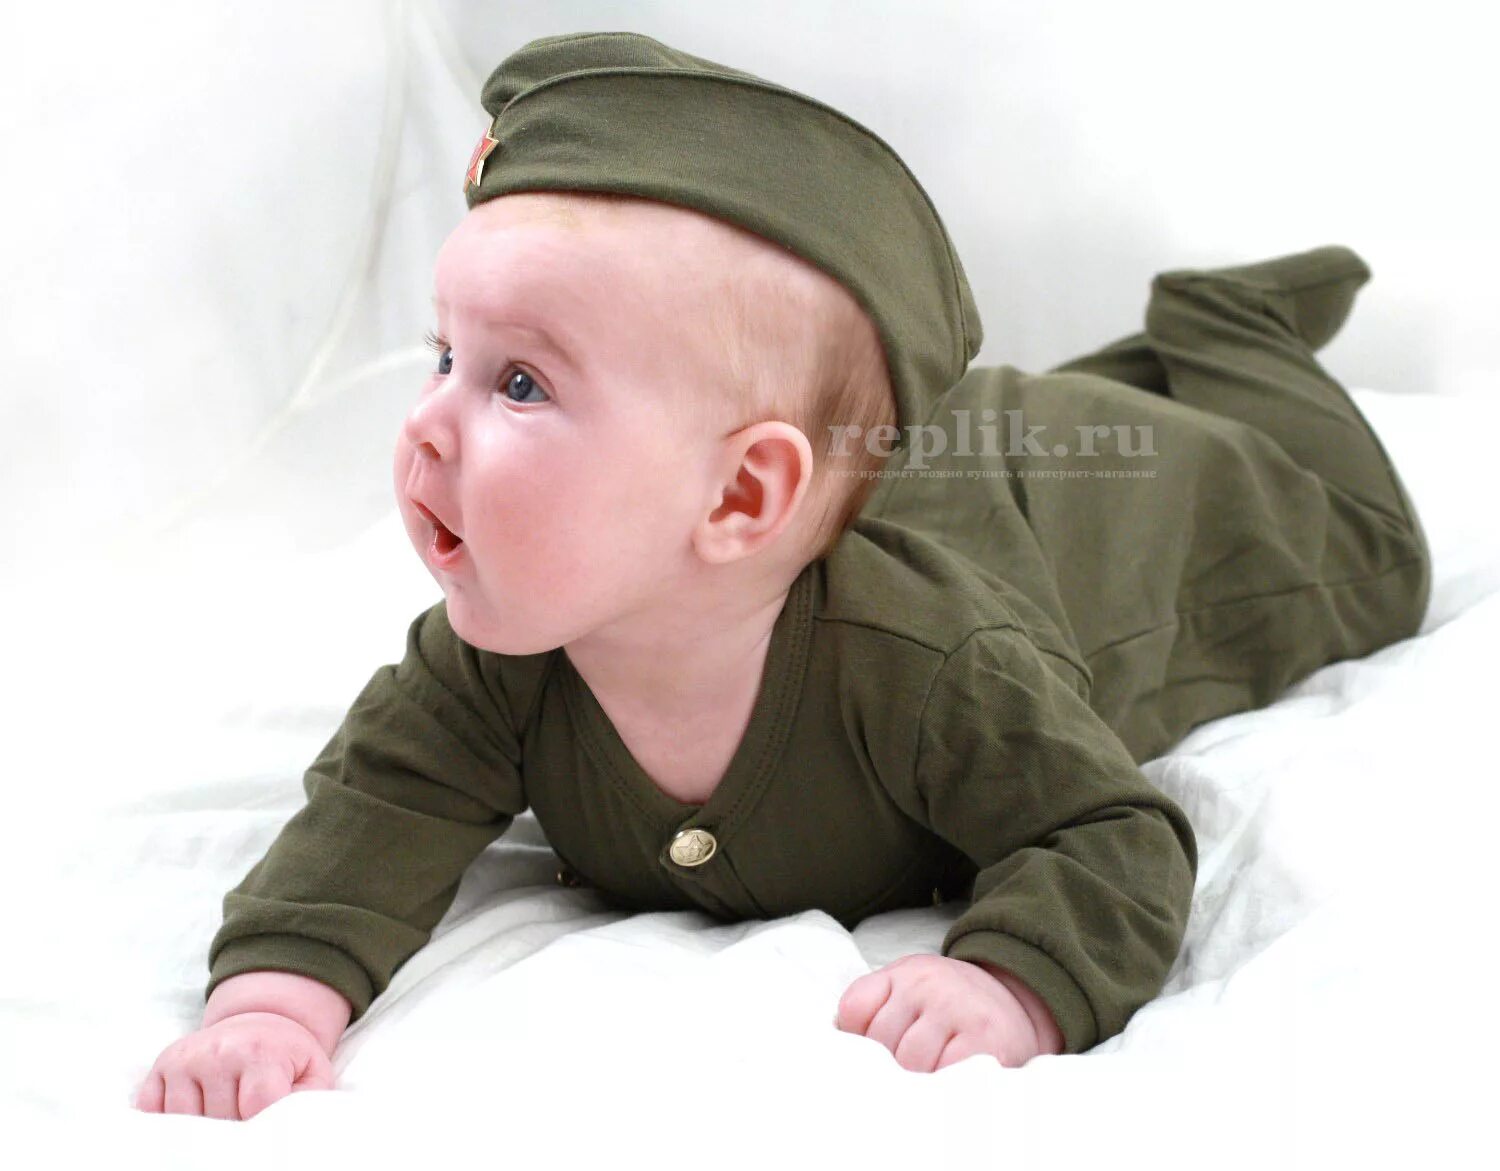 Маленький военный. Дети в военной форме. Малыш в военной форме. Младенец в военной форме. Маленькие дети в военной форме.